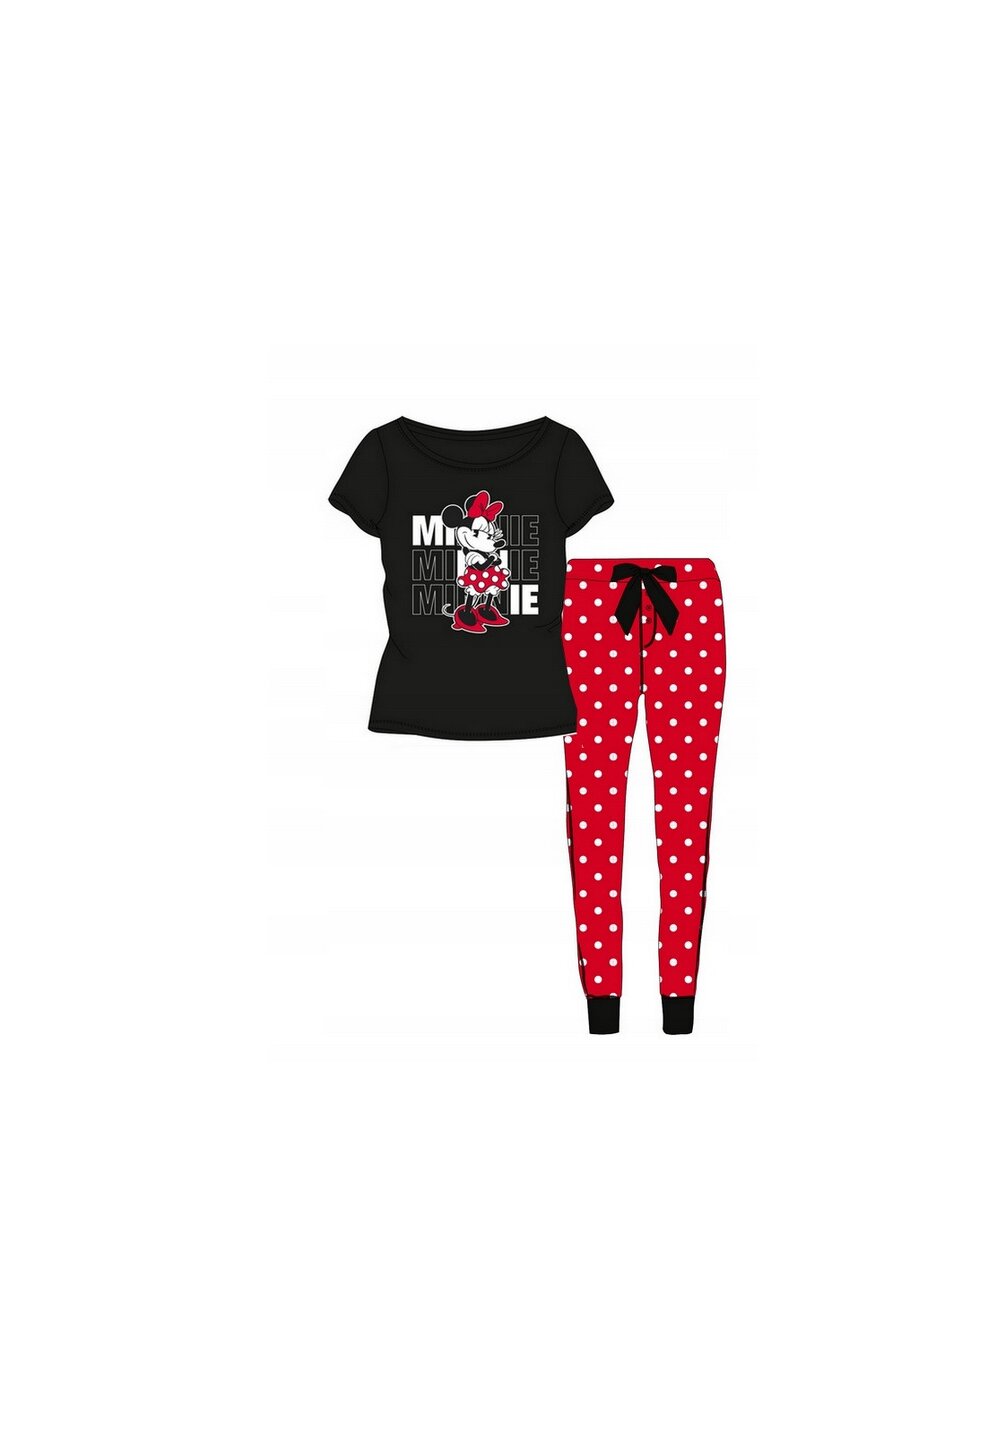 Pijama femei, ML, bumbac, Minnie, negru cu rosu